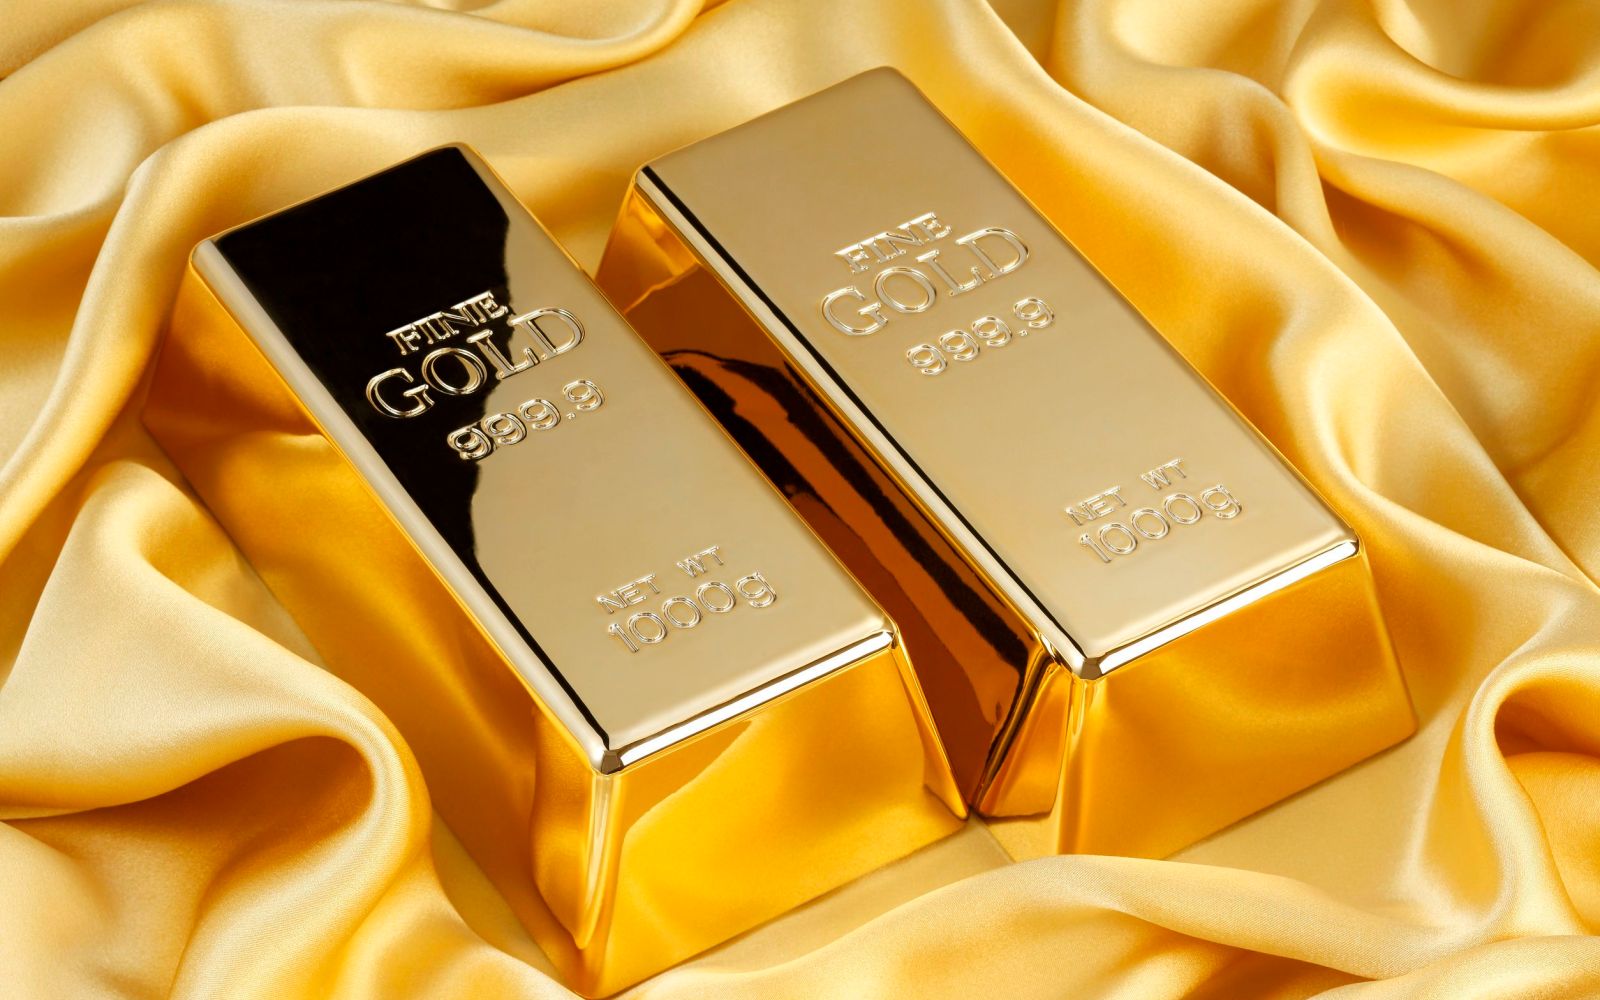 أسعار الذهب ترتفع مع تصاعد التوترات في الشرق الأوسط